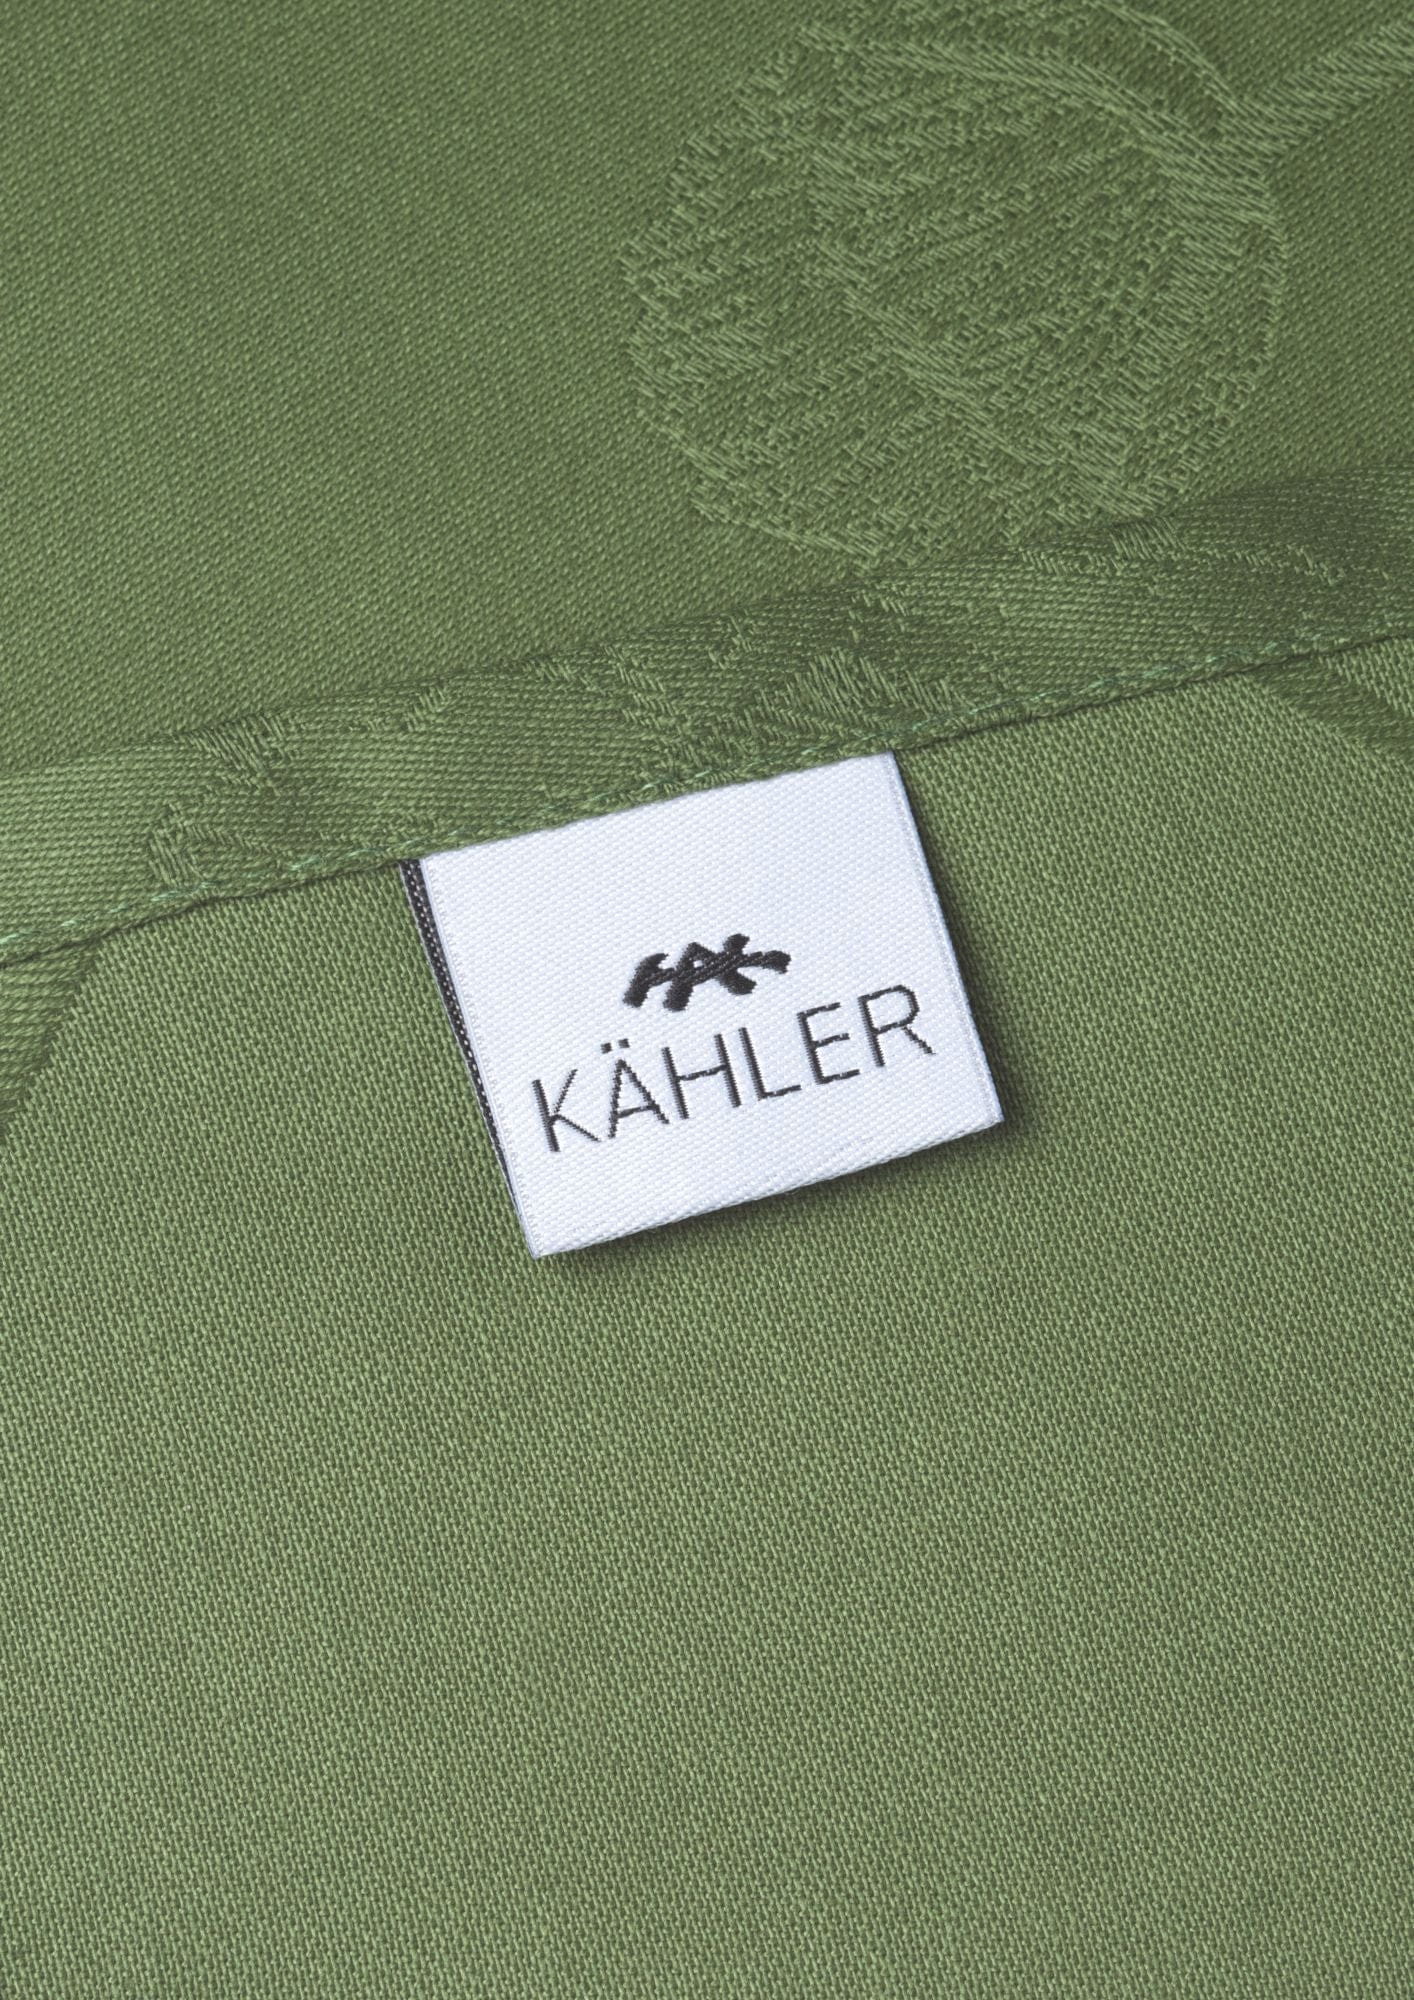 Kähler Hammershøi Poppy Doek Napkinner 4 P CS. 45x45 cm, groen